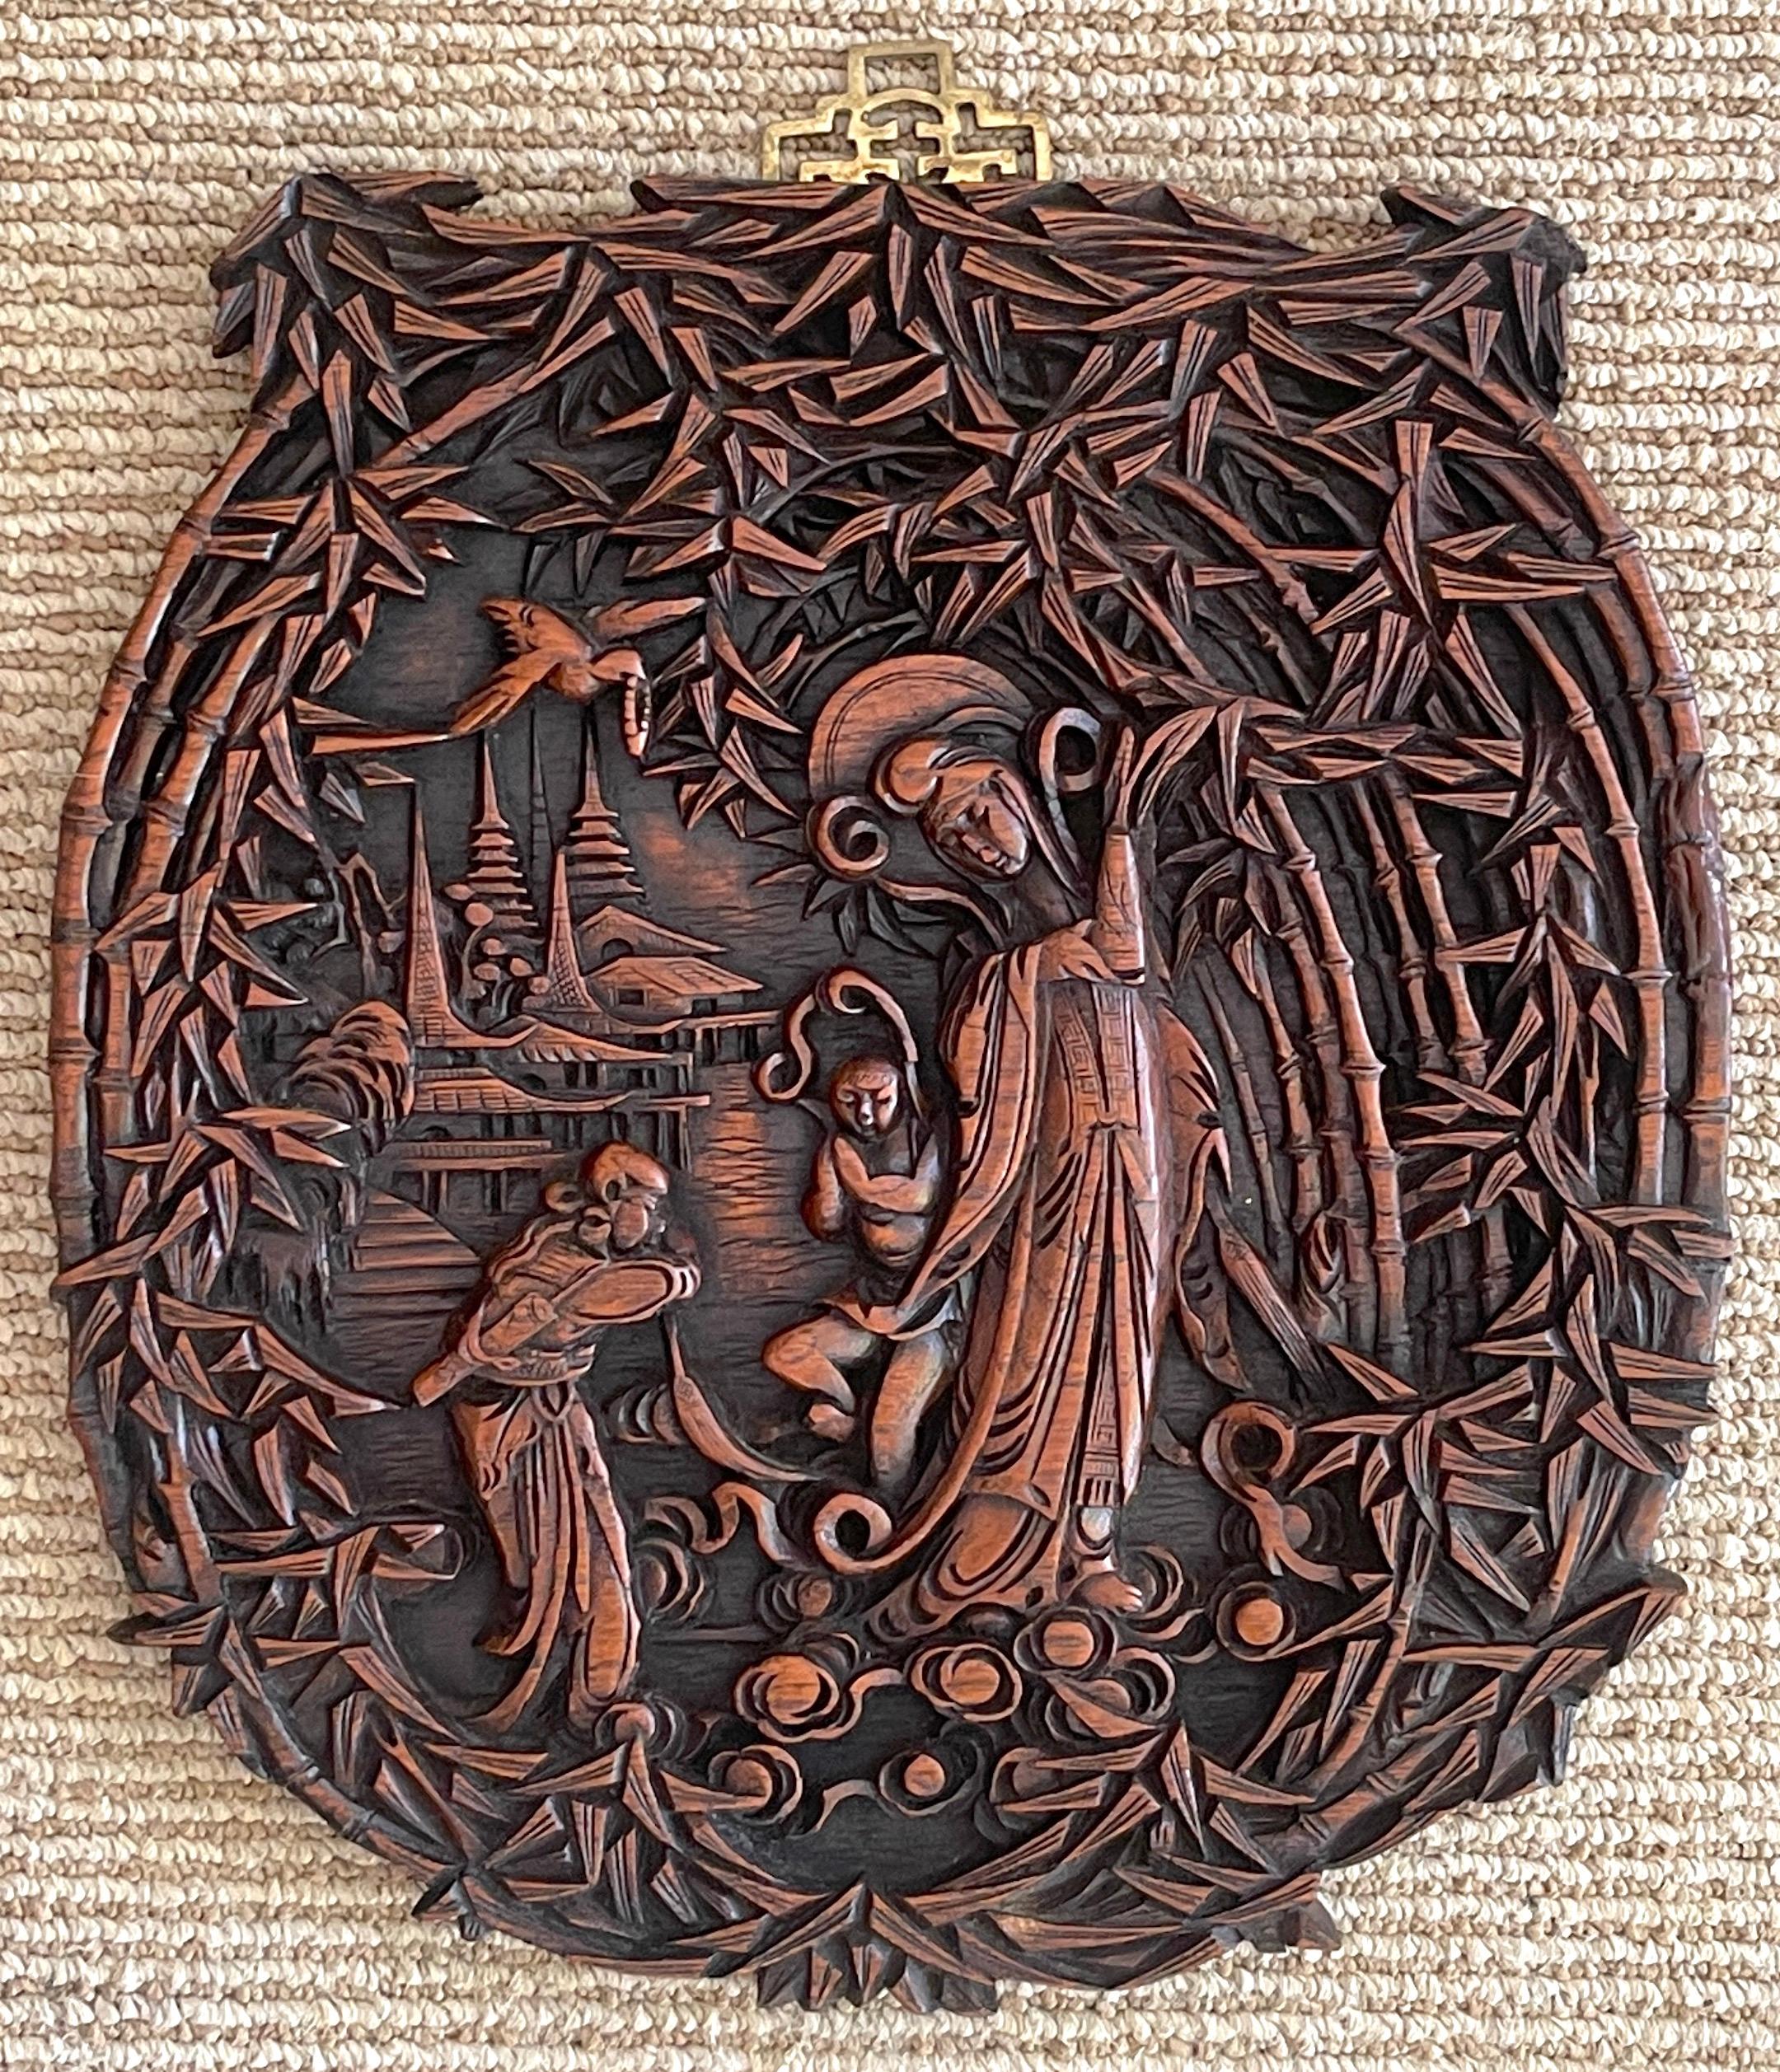 Plaque d'exportation chinoise en bois dur sculptée de Quan Yin dans un paysage 
Chine, vers 1920

Plaque paysagère de Quan Yin, déesse bouddhiste de la compassion, de la miséricorde et de la guérison, éternelle protectrice des femmes et des enfants,